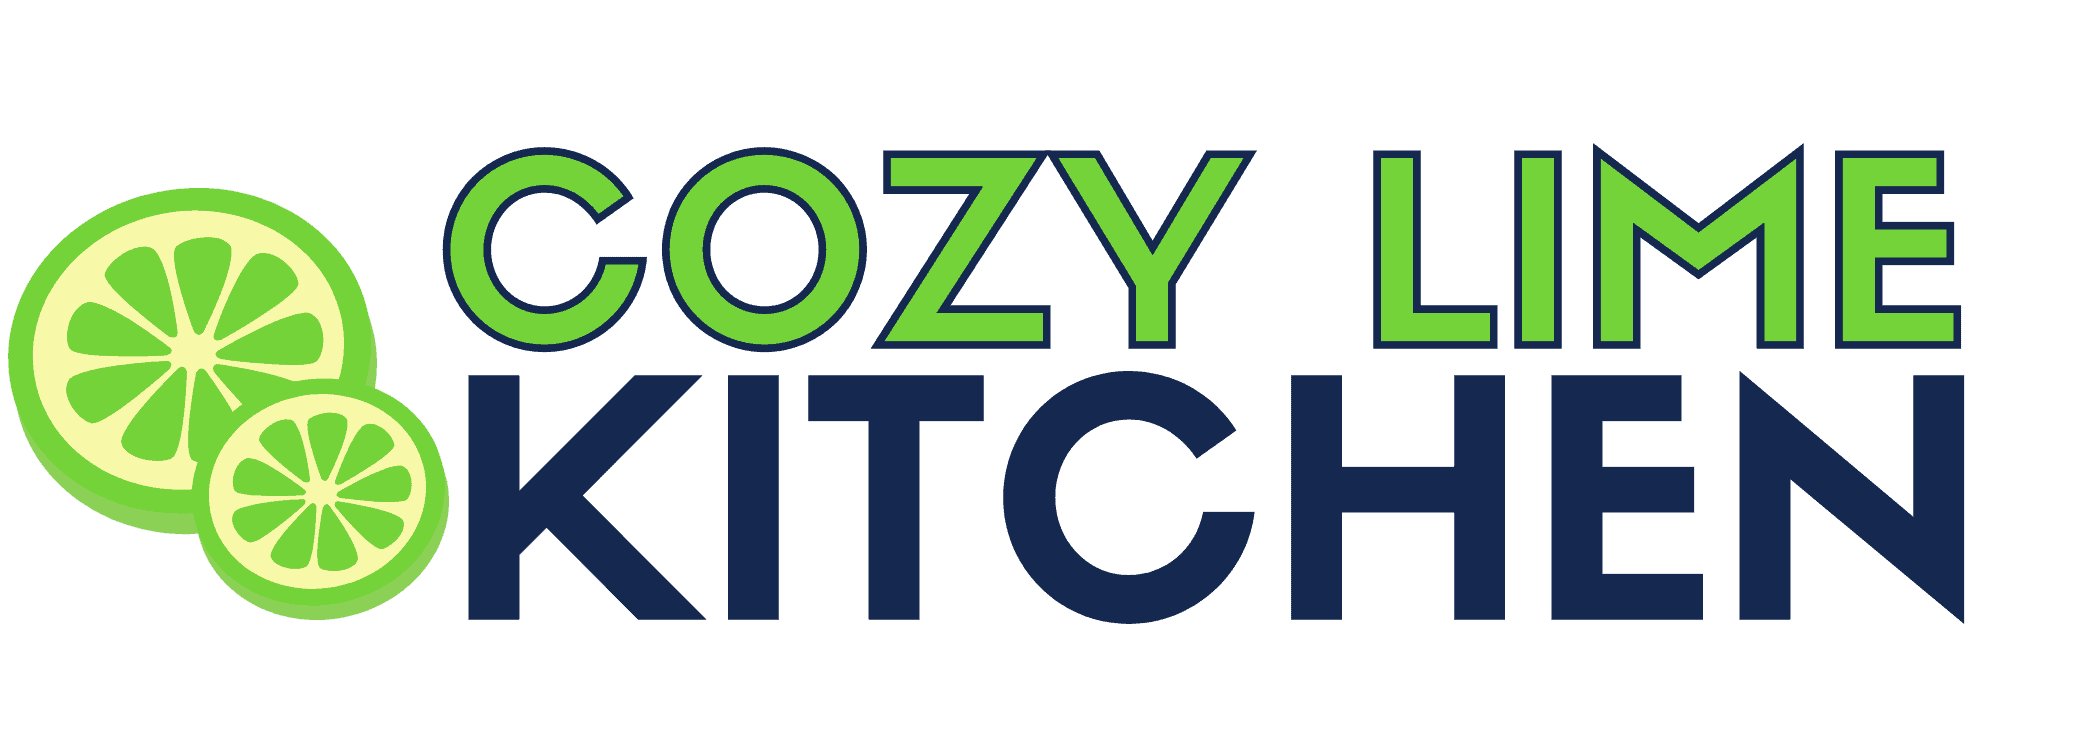 cozy lime kitchen logo